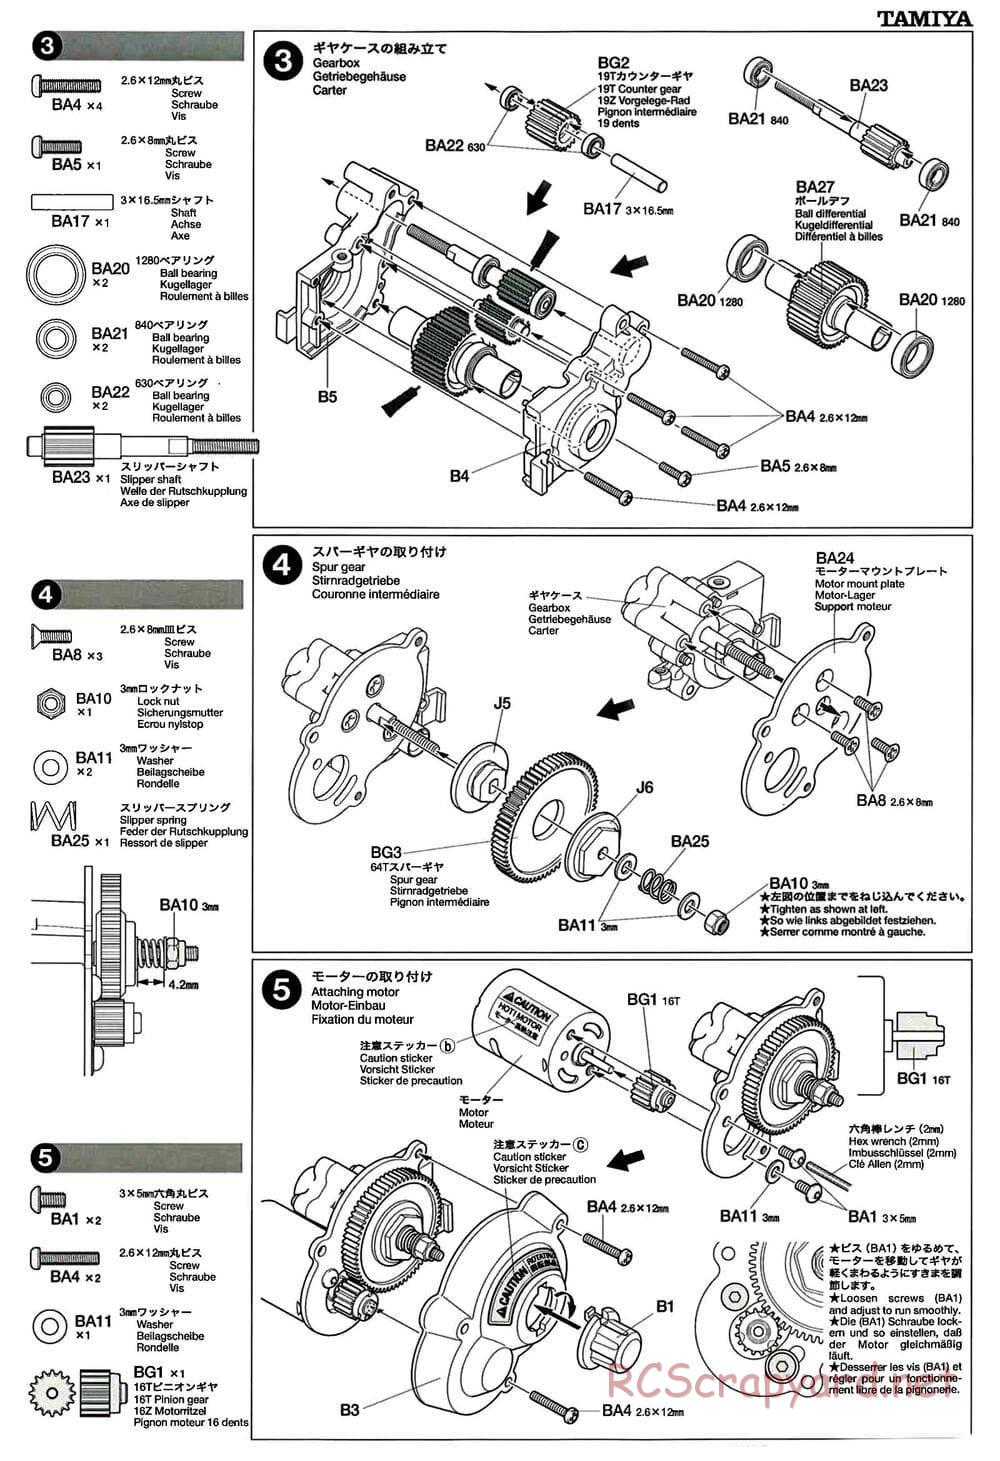 Tamiya - GT-01 Chassis - Manual - Page 5